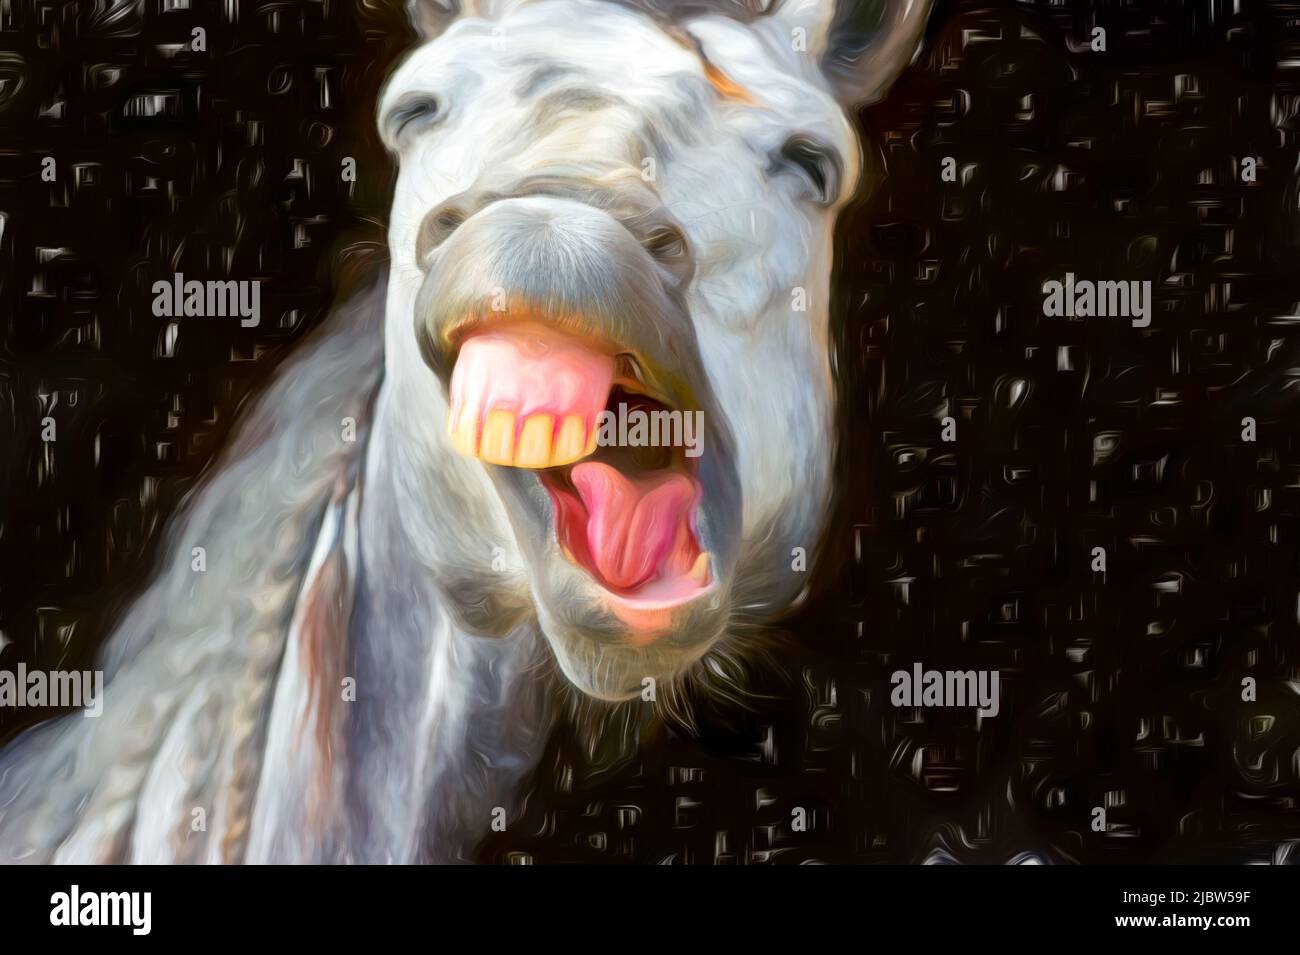 A Funny Looking Horse è risata con Confetti che piove in Painting Image Format Foto Stock